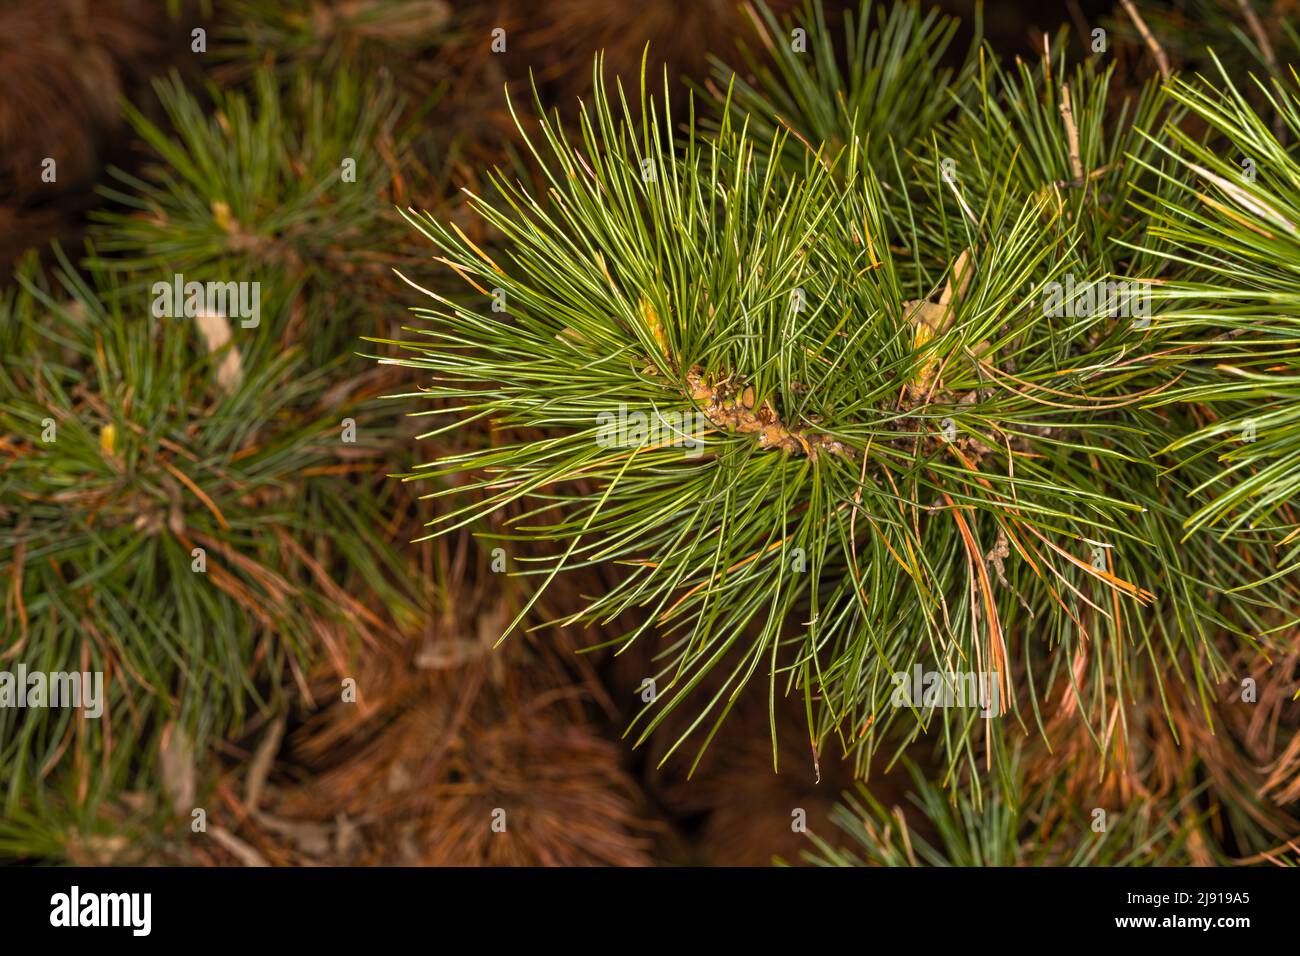 Leaves of Macedonian or Balkan Pine (Pinus peuce) Stock Photo